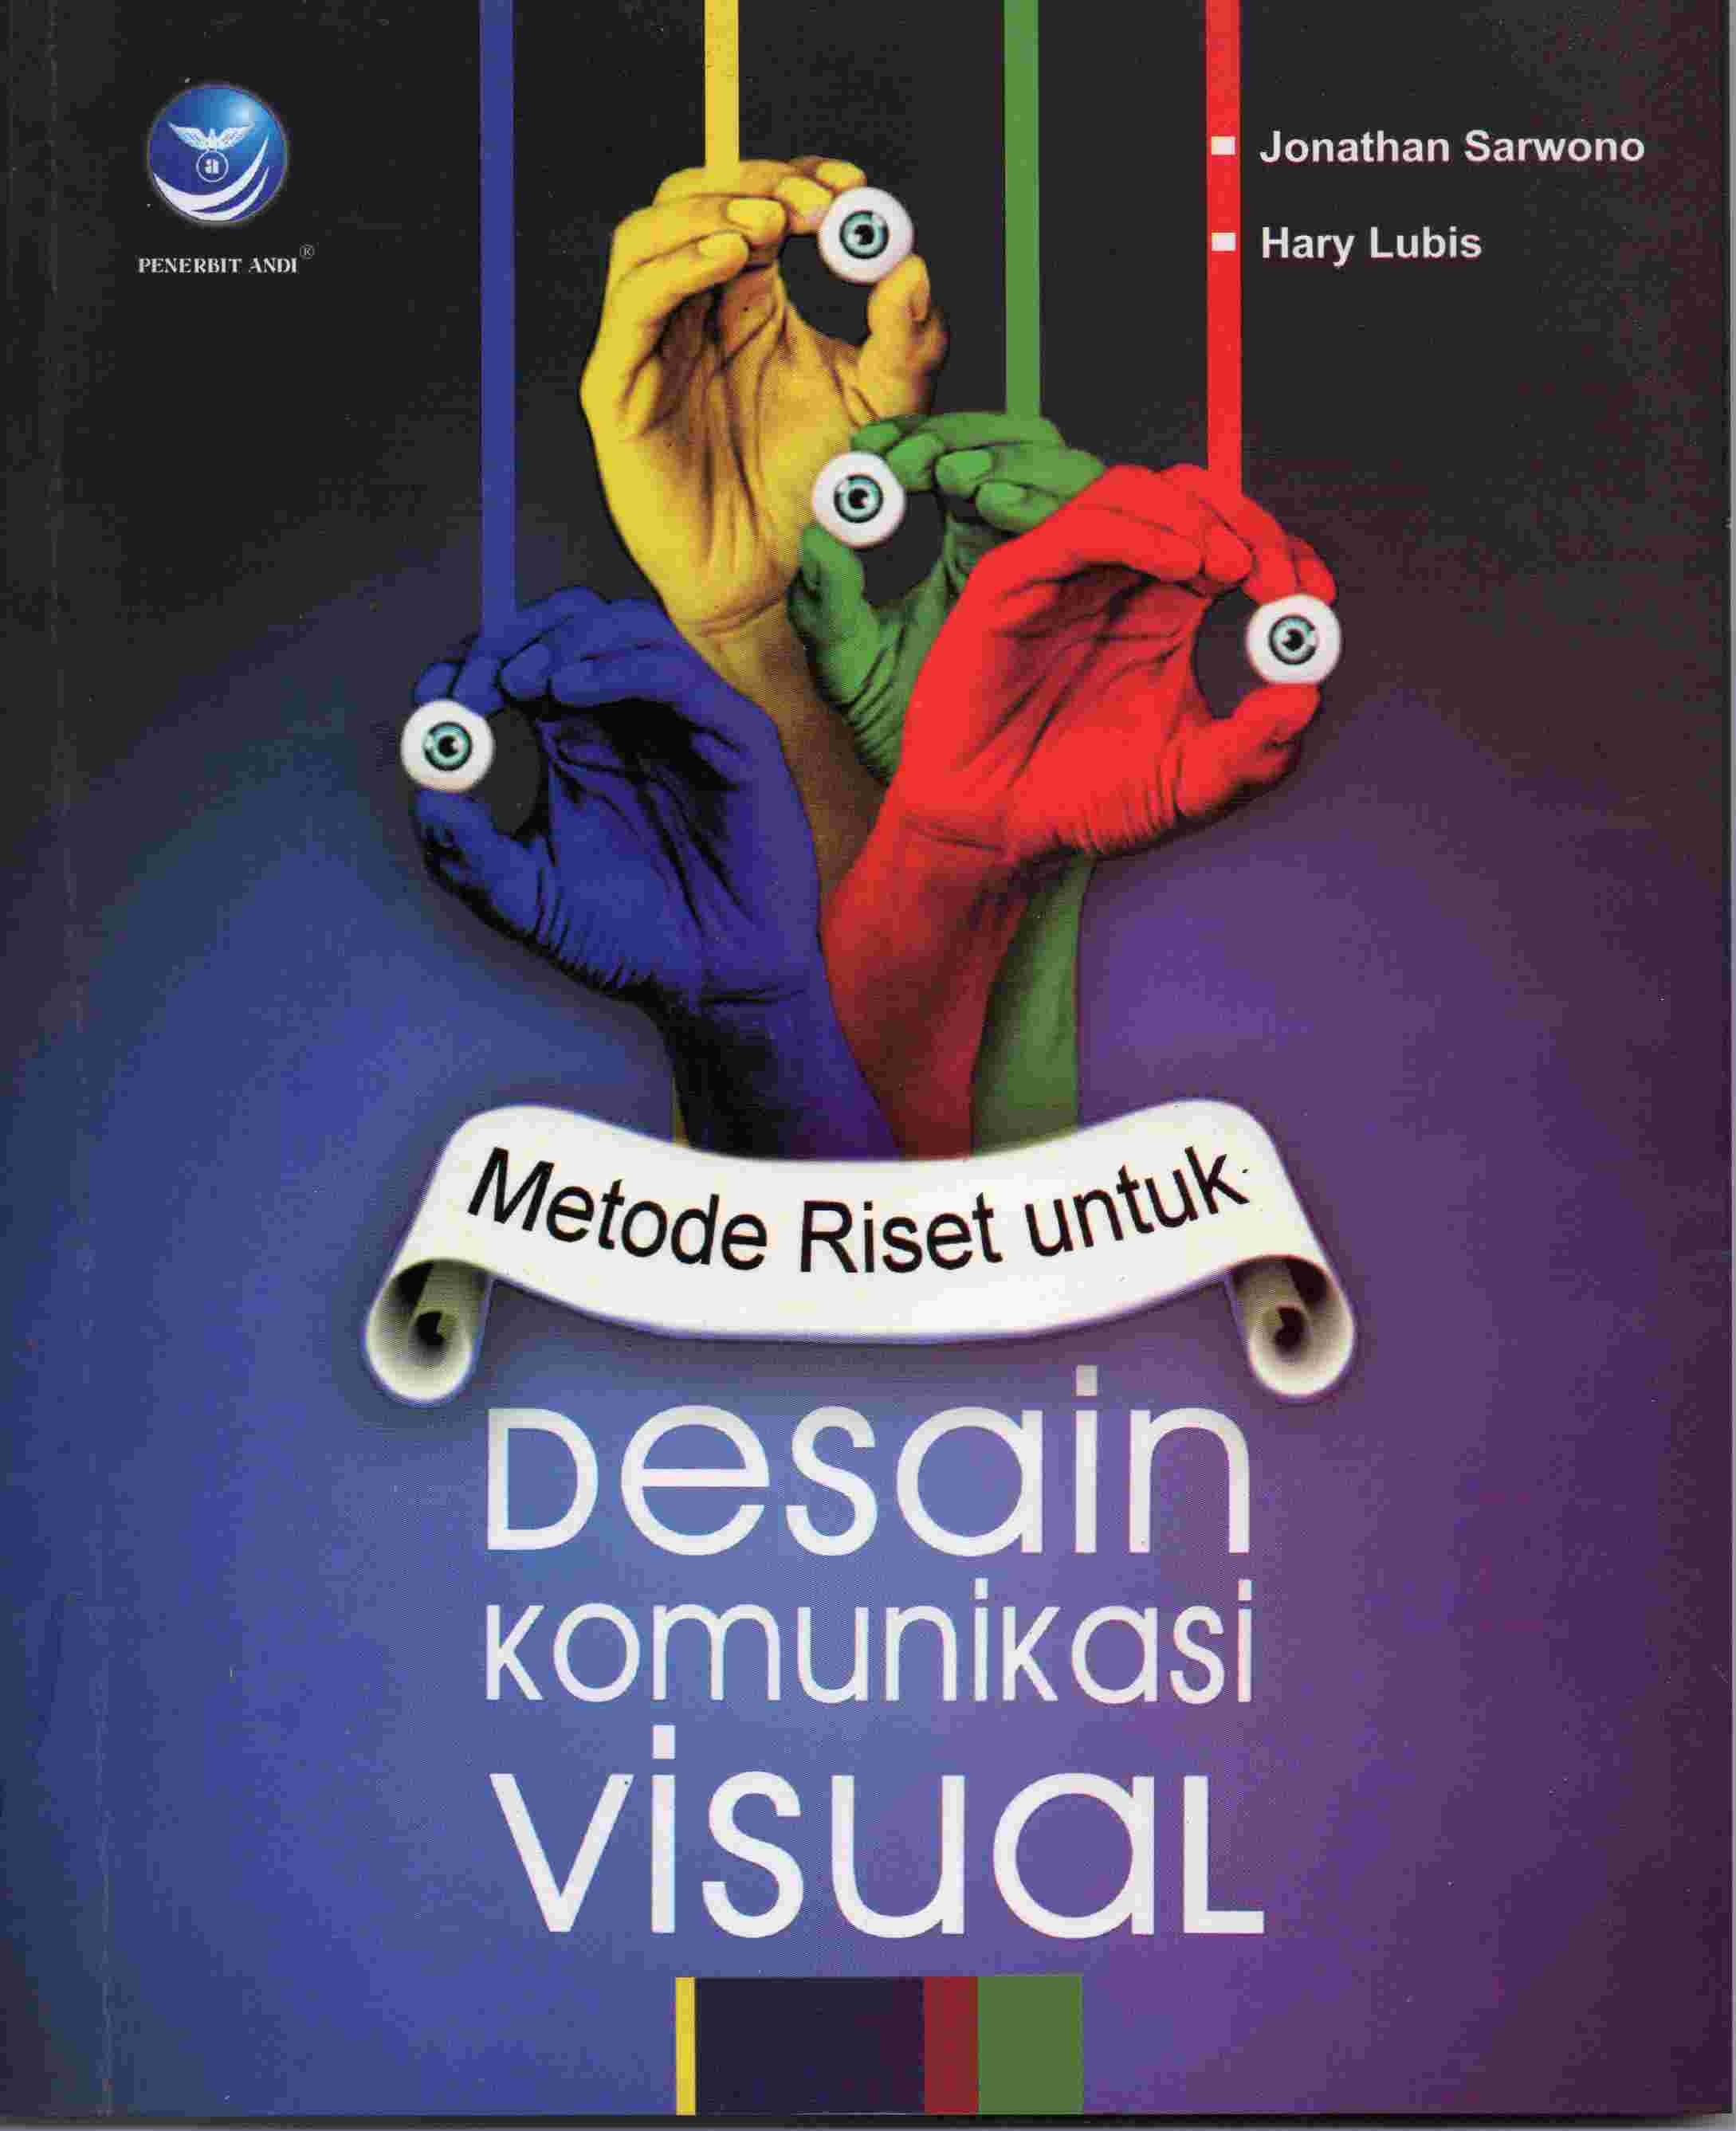 Metode riset untuk desain komunikasi visual